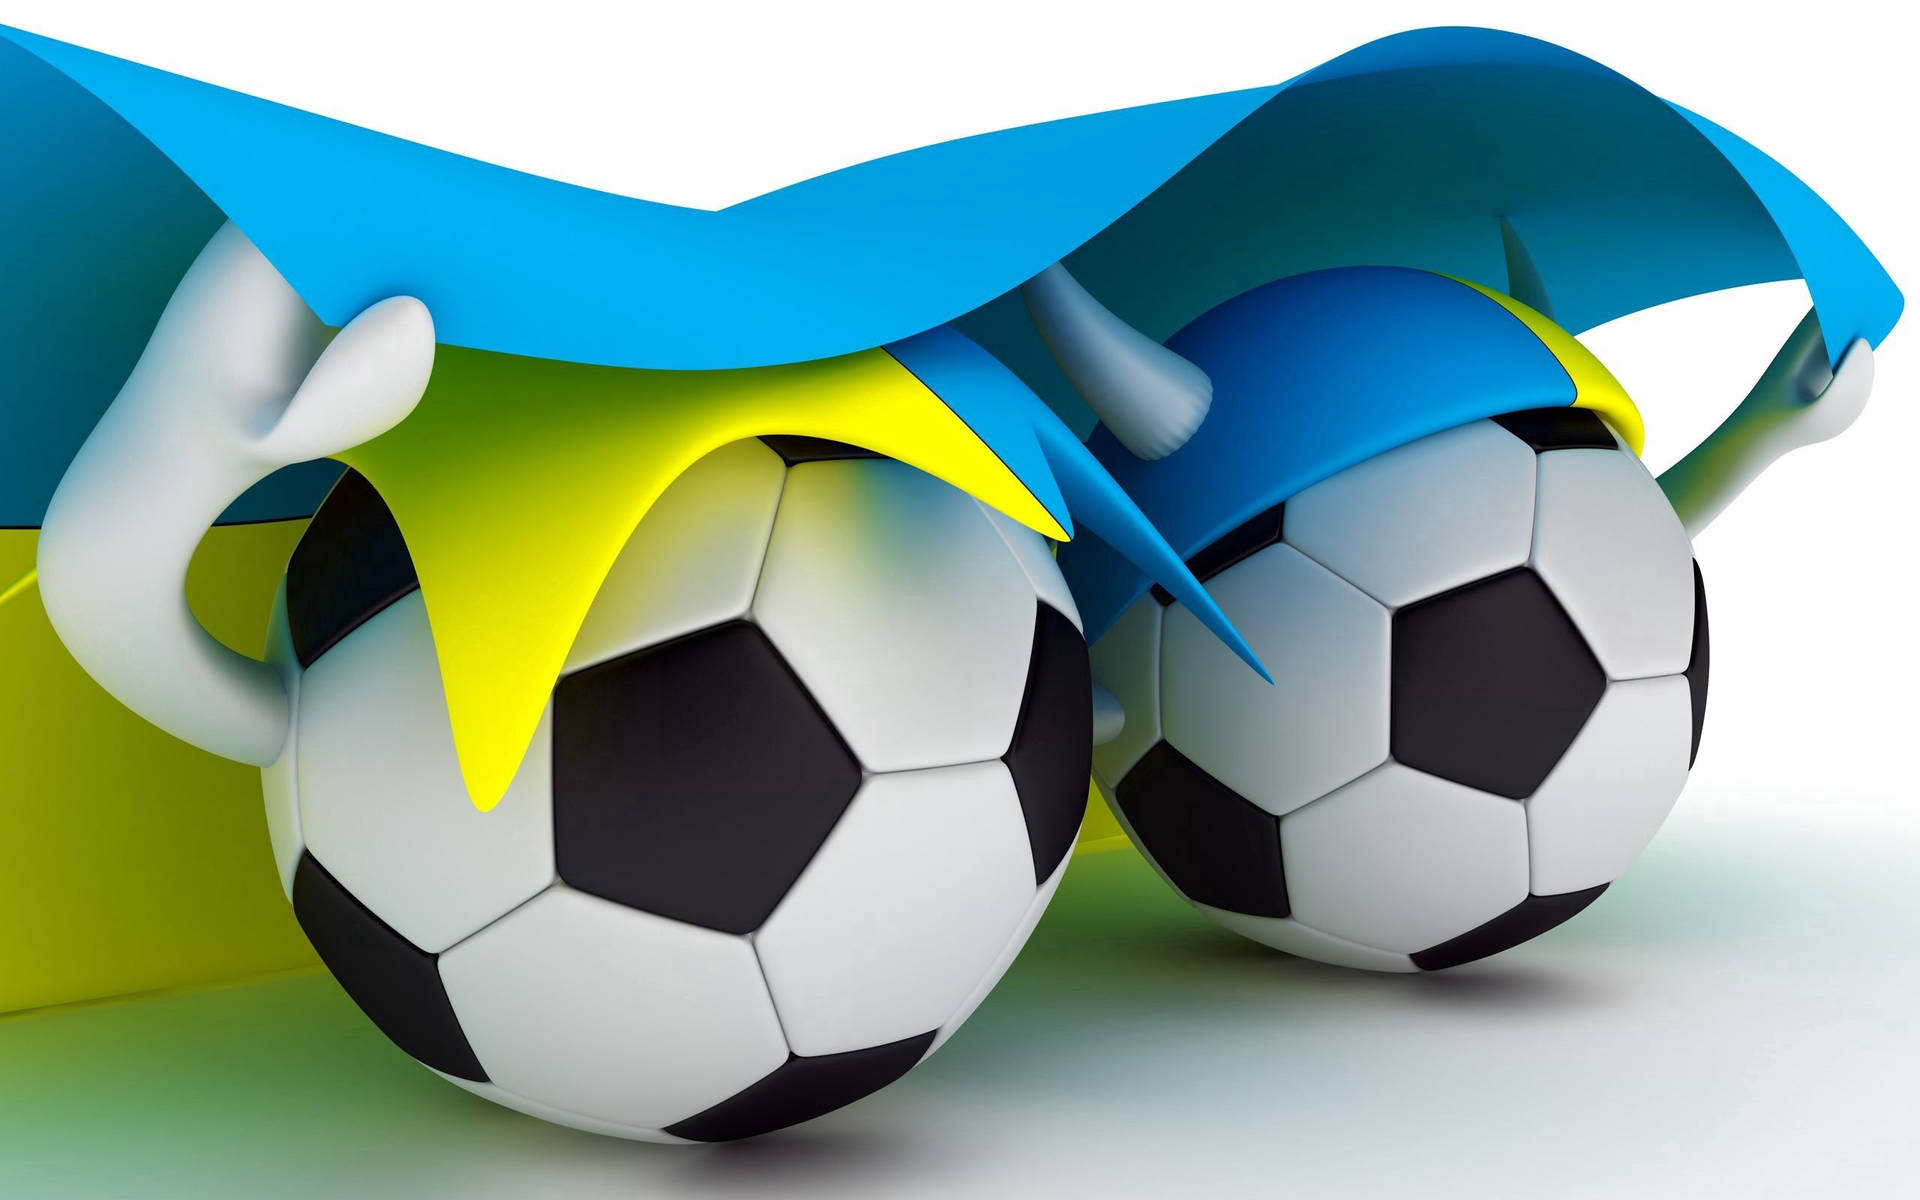 Ukraine Flag And Soccer Balls Background